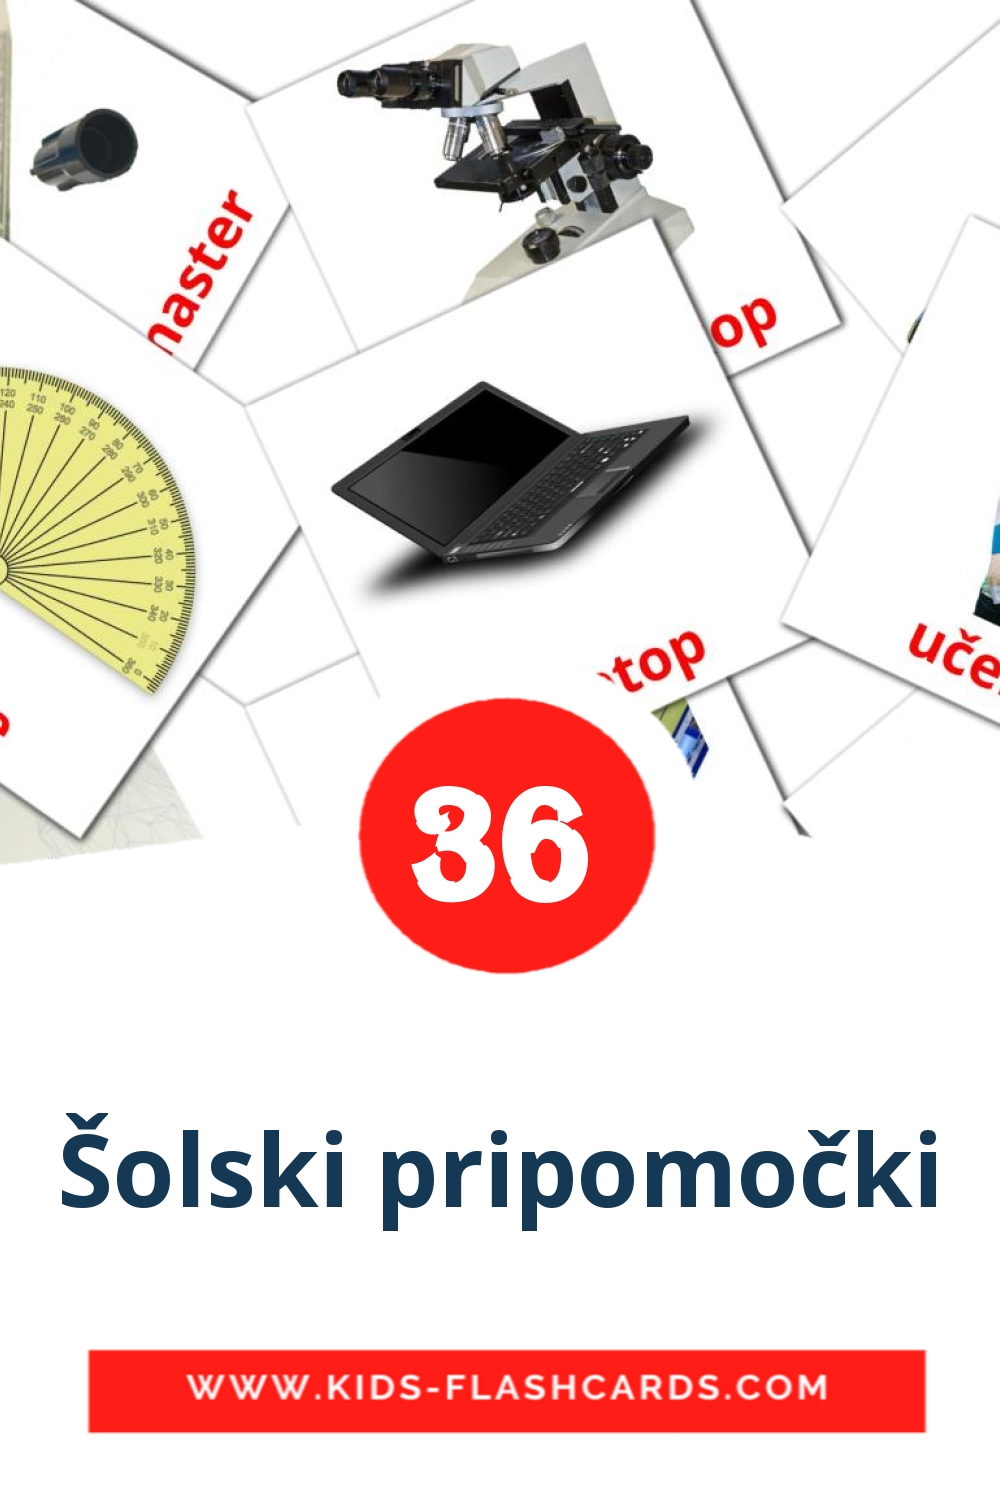 36 tarjetas didacticas de Šolski pripomočki para el jardín de infancia en serbio